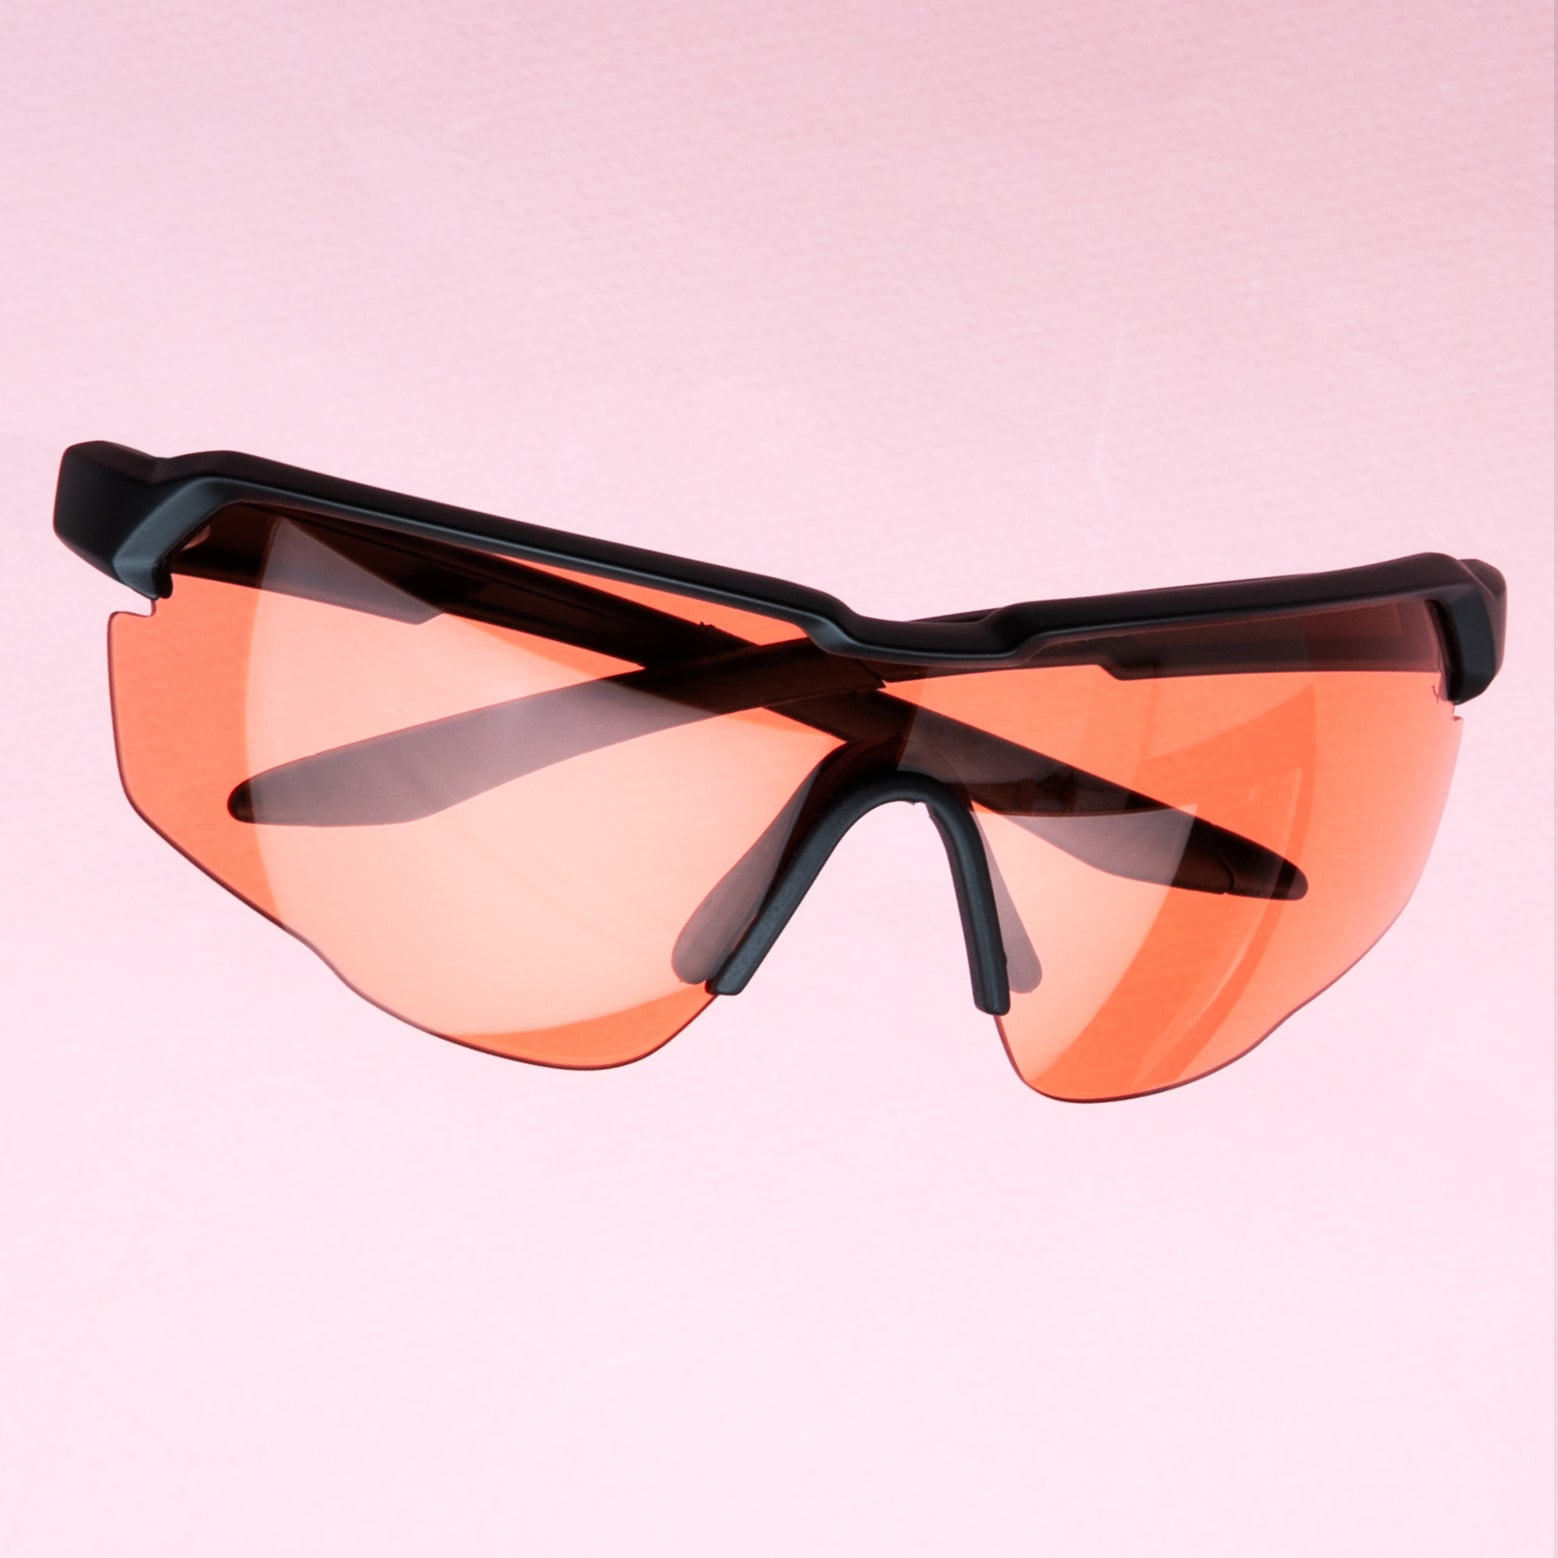 Dune x illesteva sporty sunglasses shown with orange lenses